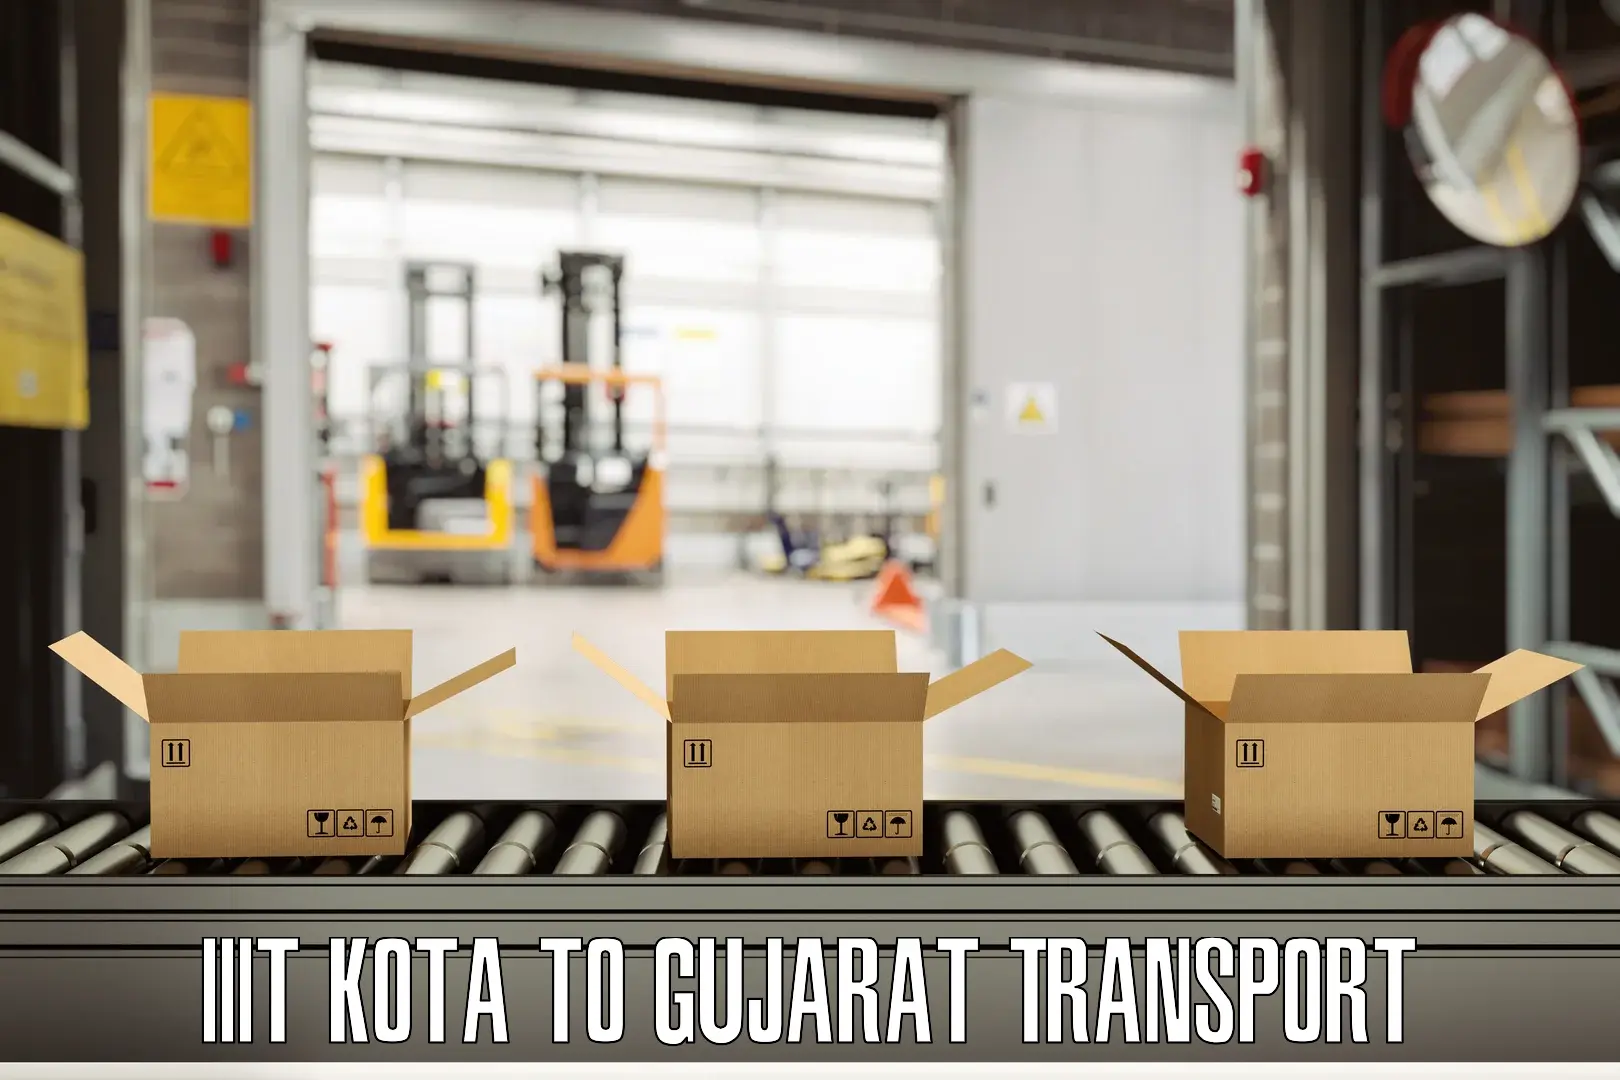 Cargo transport services IIIT Kota to Talala